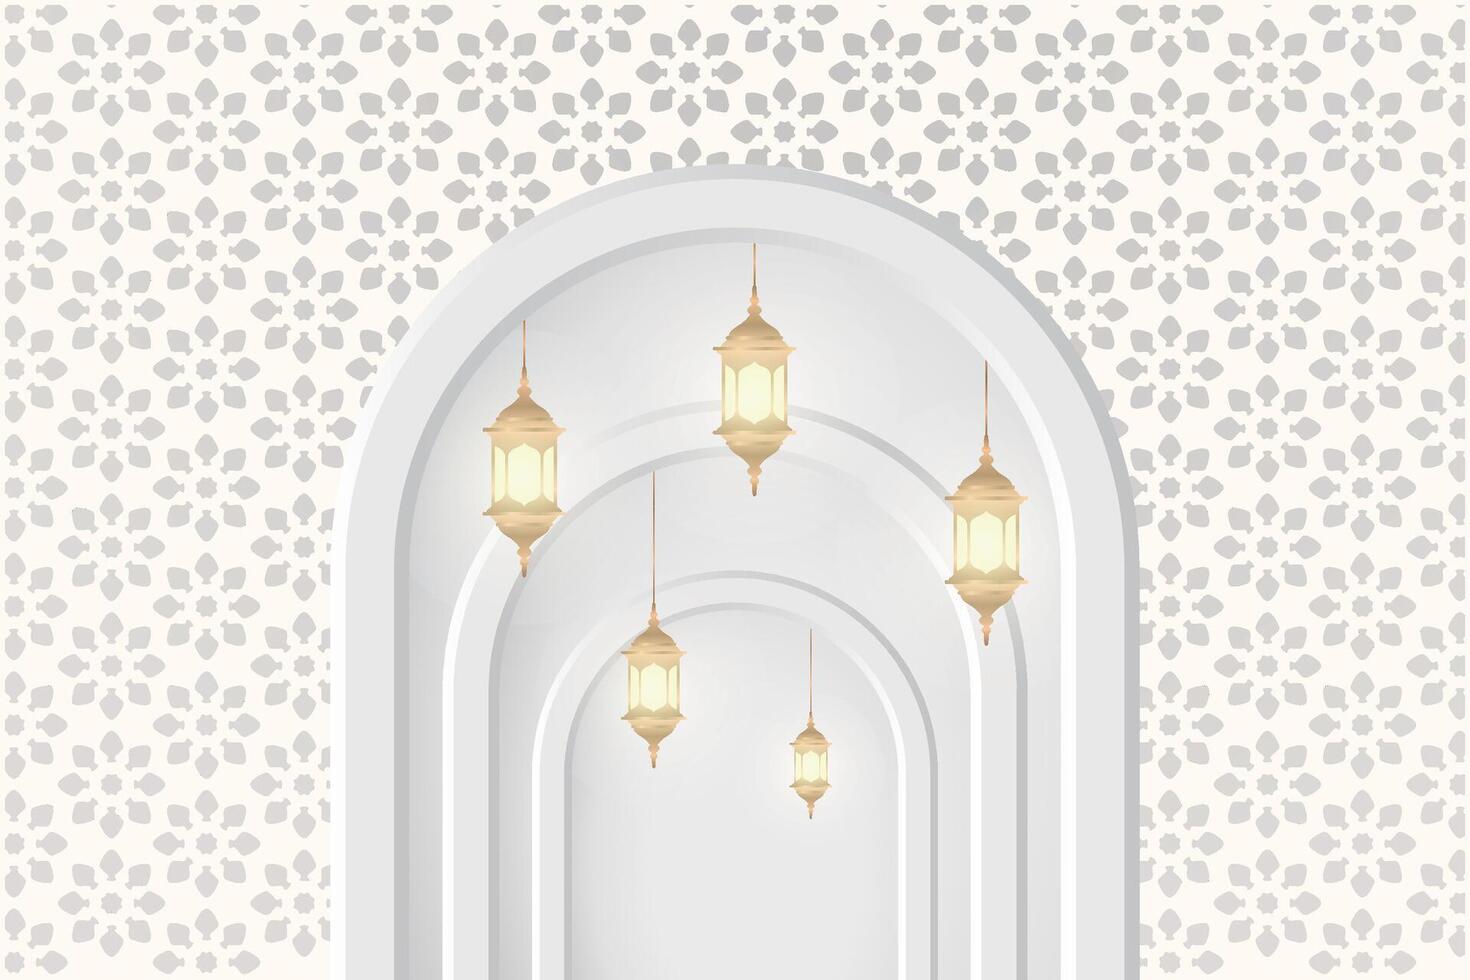 eid al-fitr, Ramadhan dekorativ hälsning kort vektor